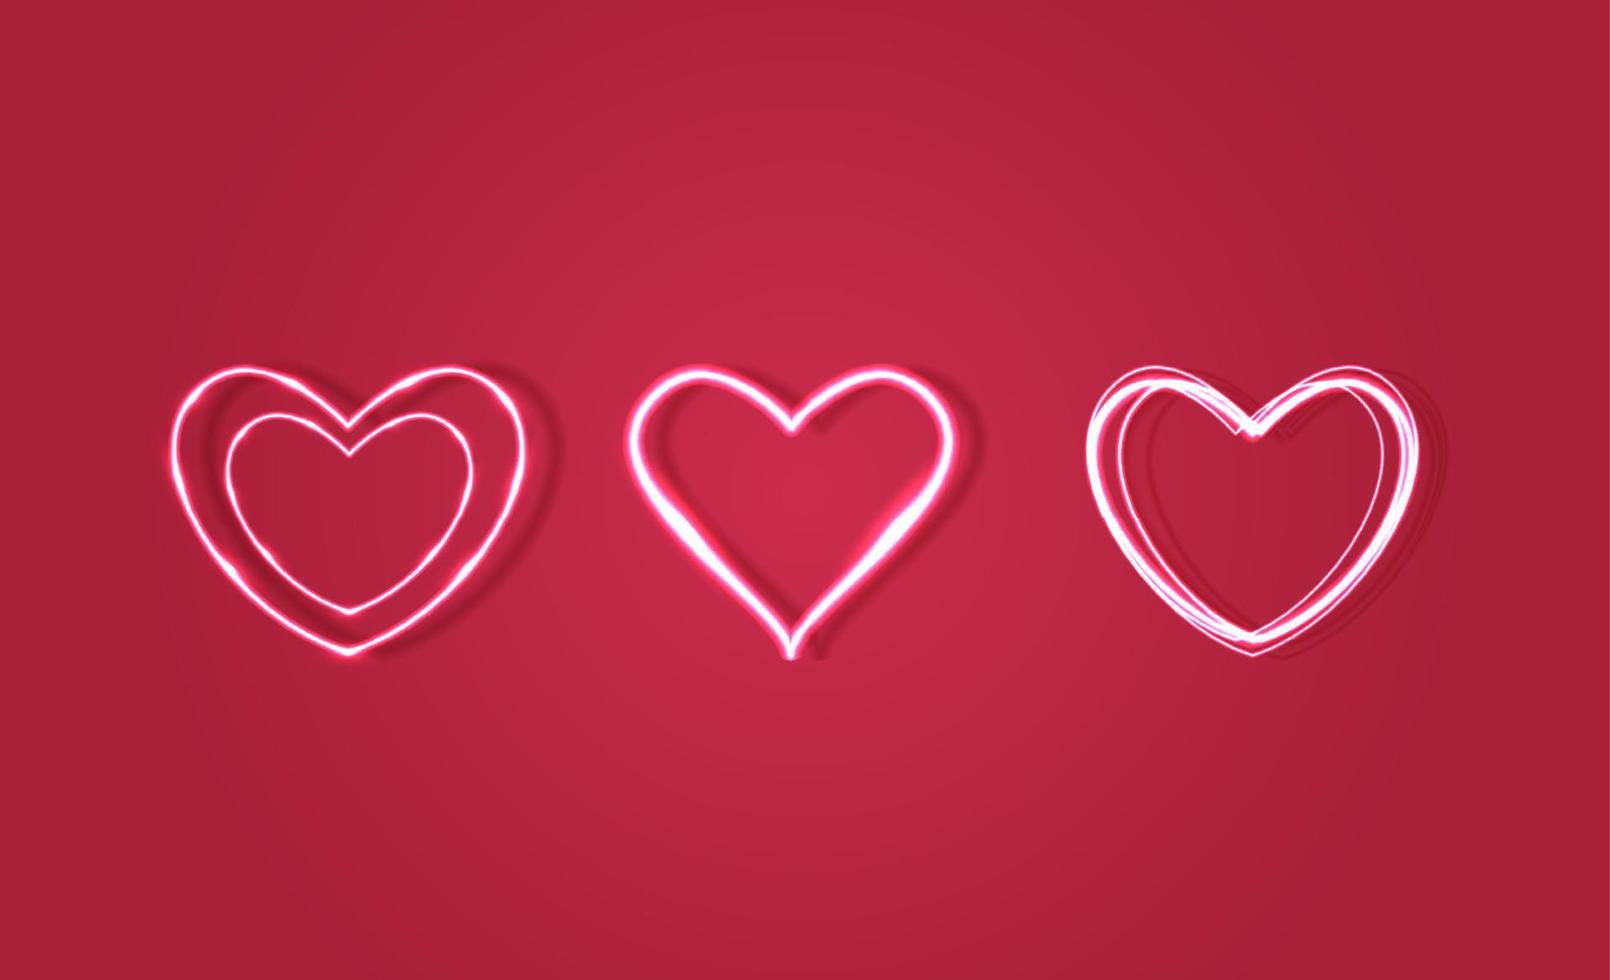 herzform, helles herz oder neonherz auf rosa hintergrund. geeignet für fröhliche Valentinstags- und Muttertagsdekoration. Satz von Herz-Vektor-Design. vektor